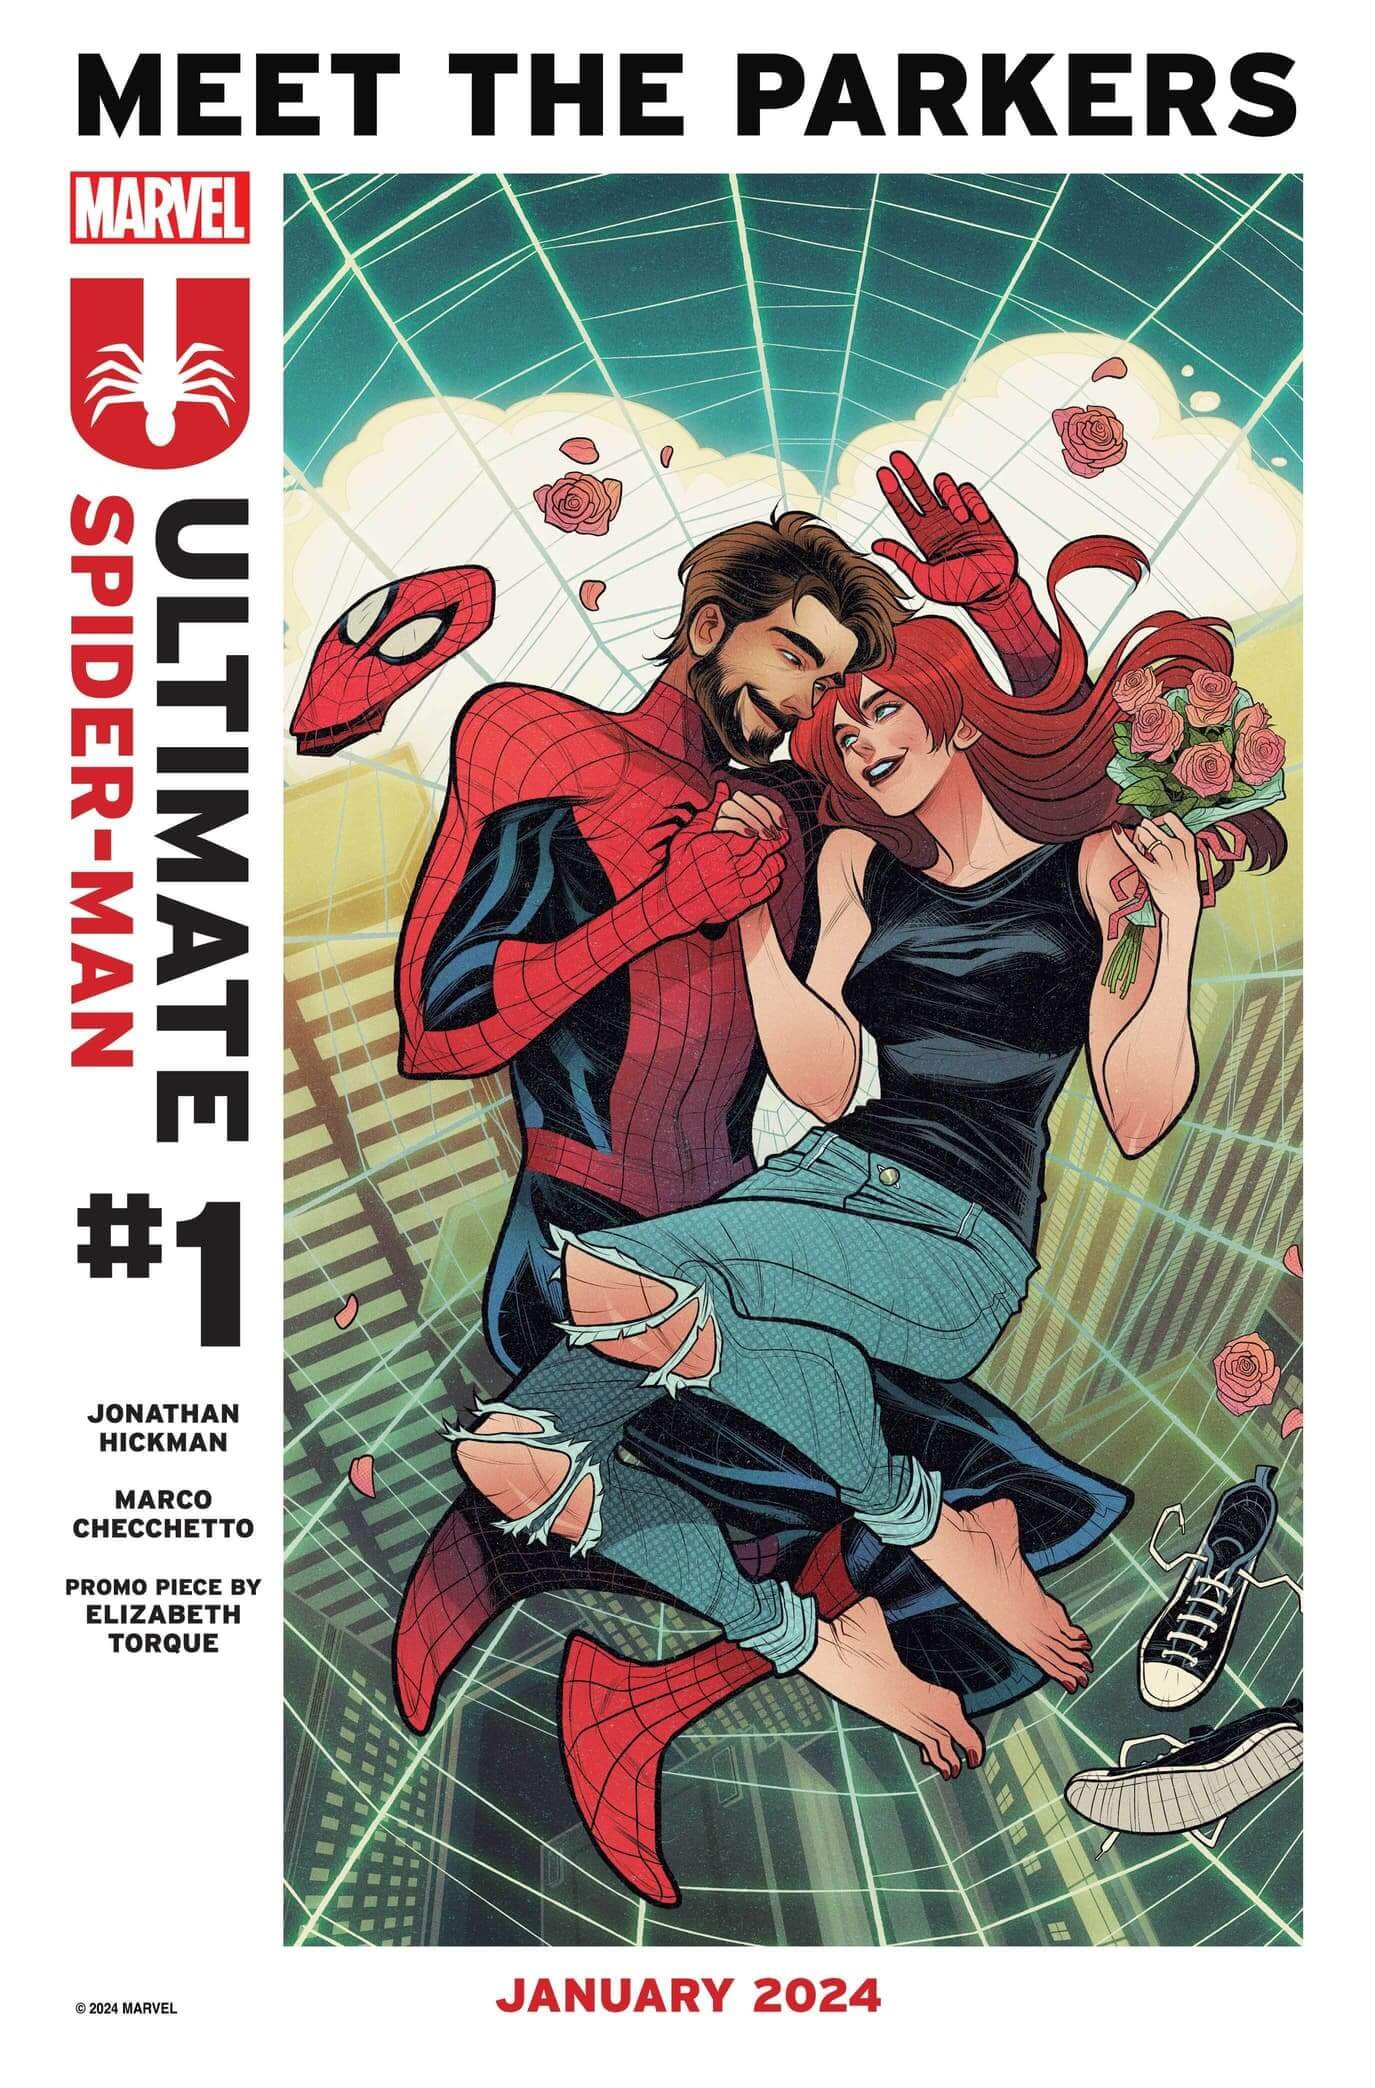 Image promotionnelle de Ultimate Spider-Man par Elisabeth Torque, avec Peter et Mary Jane.